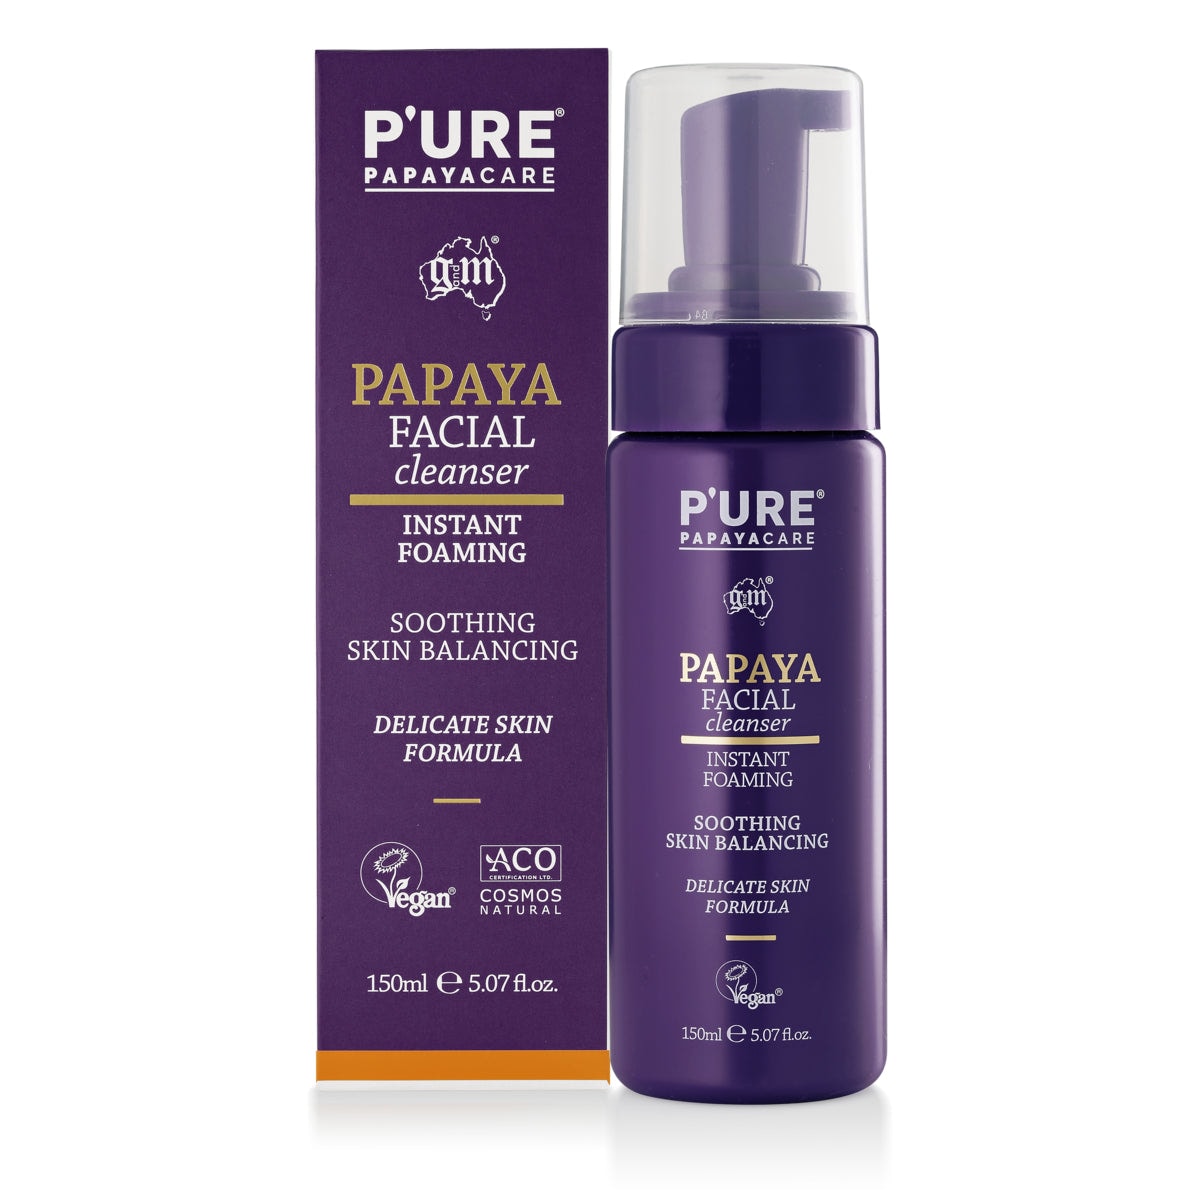 P'ure Papayacare Papaya Facial Cleanser 150ml